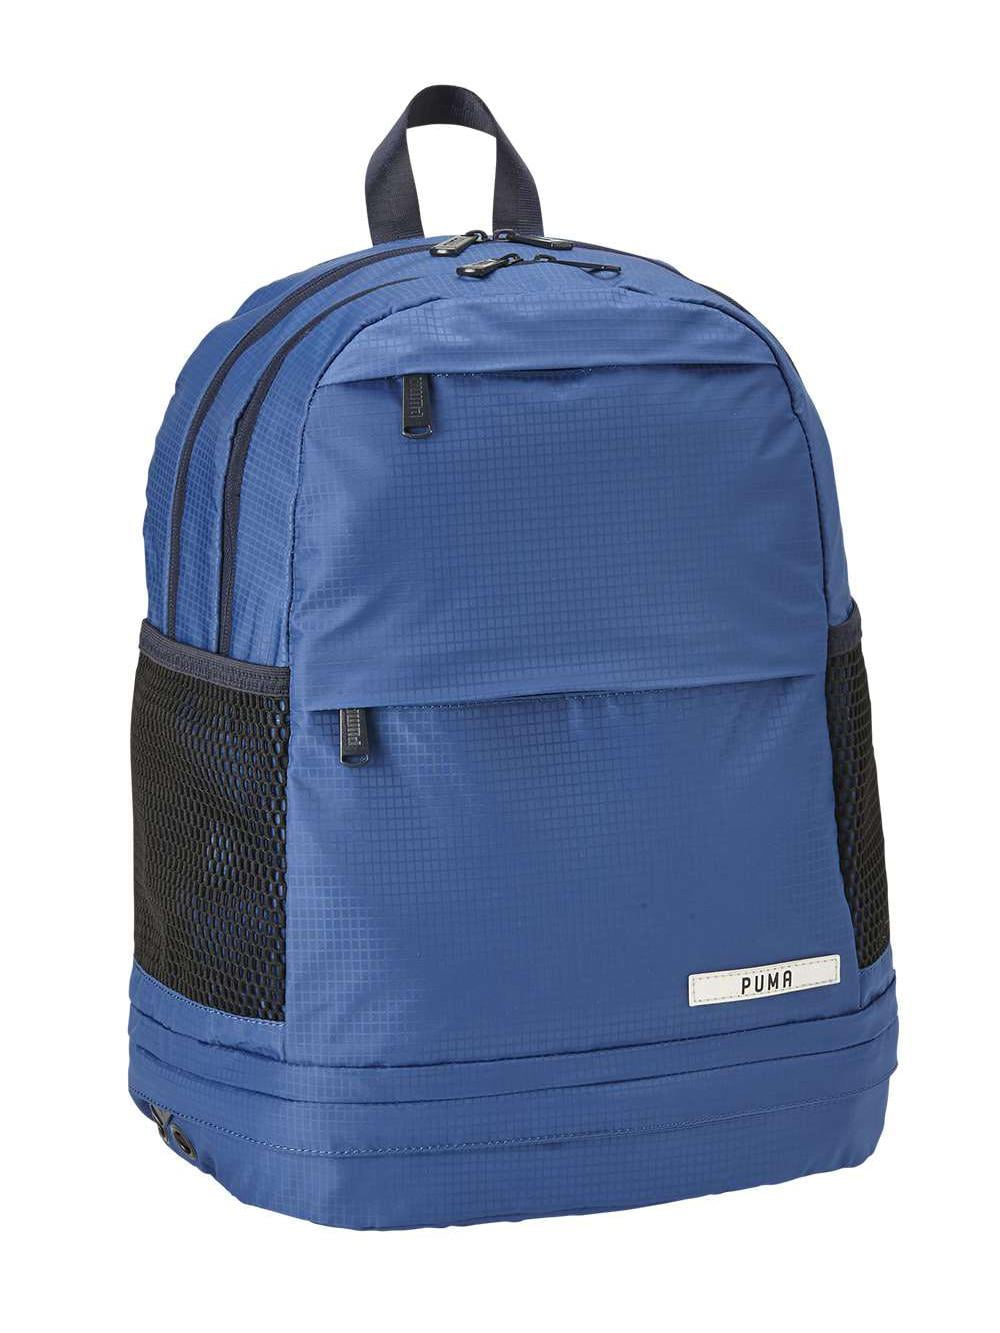 Amazon.com: PUMA teamGOAL 23 Teambag S, Electric Blue Lemonade Black, OSFA  : Clothing, Shoes & Jewelry